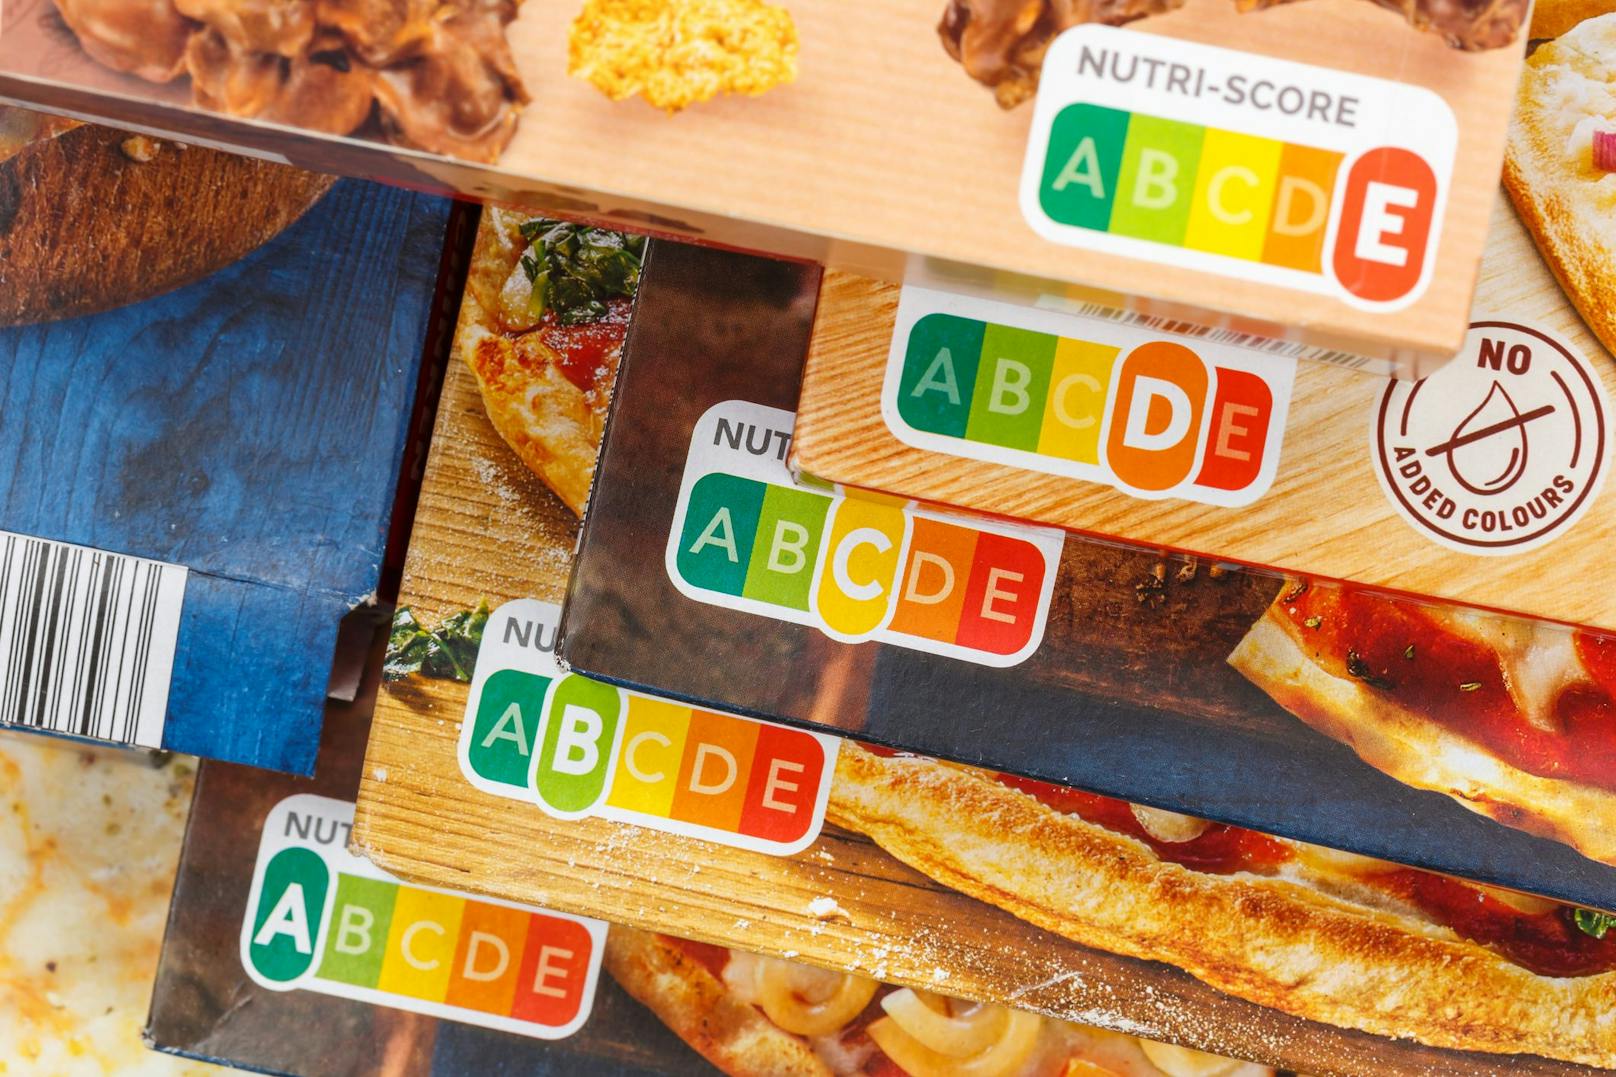 Der Nutri-Score bewertet das Nährwertprofil verarbeiteter Lebensmittel, also die Zusammensetzung der Nährstoffe.